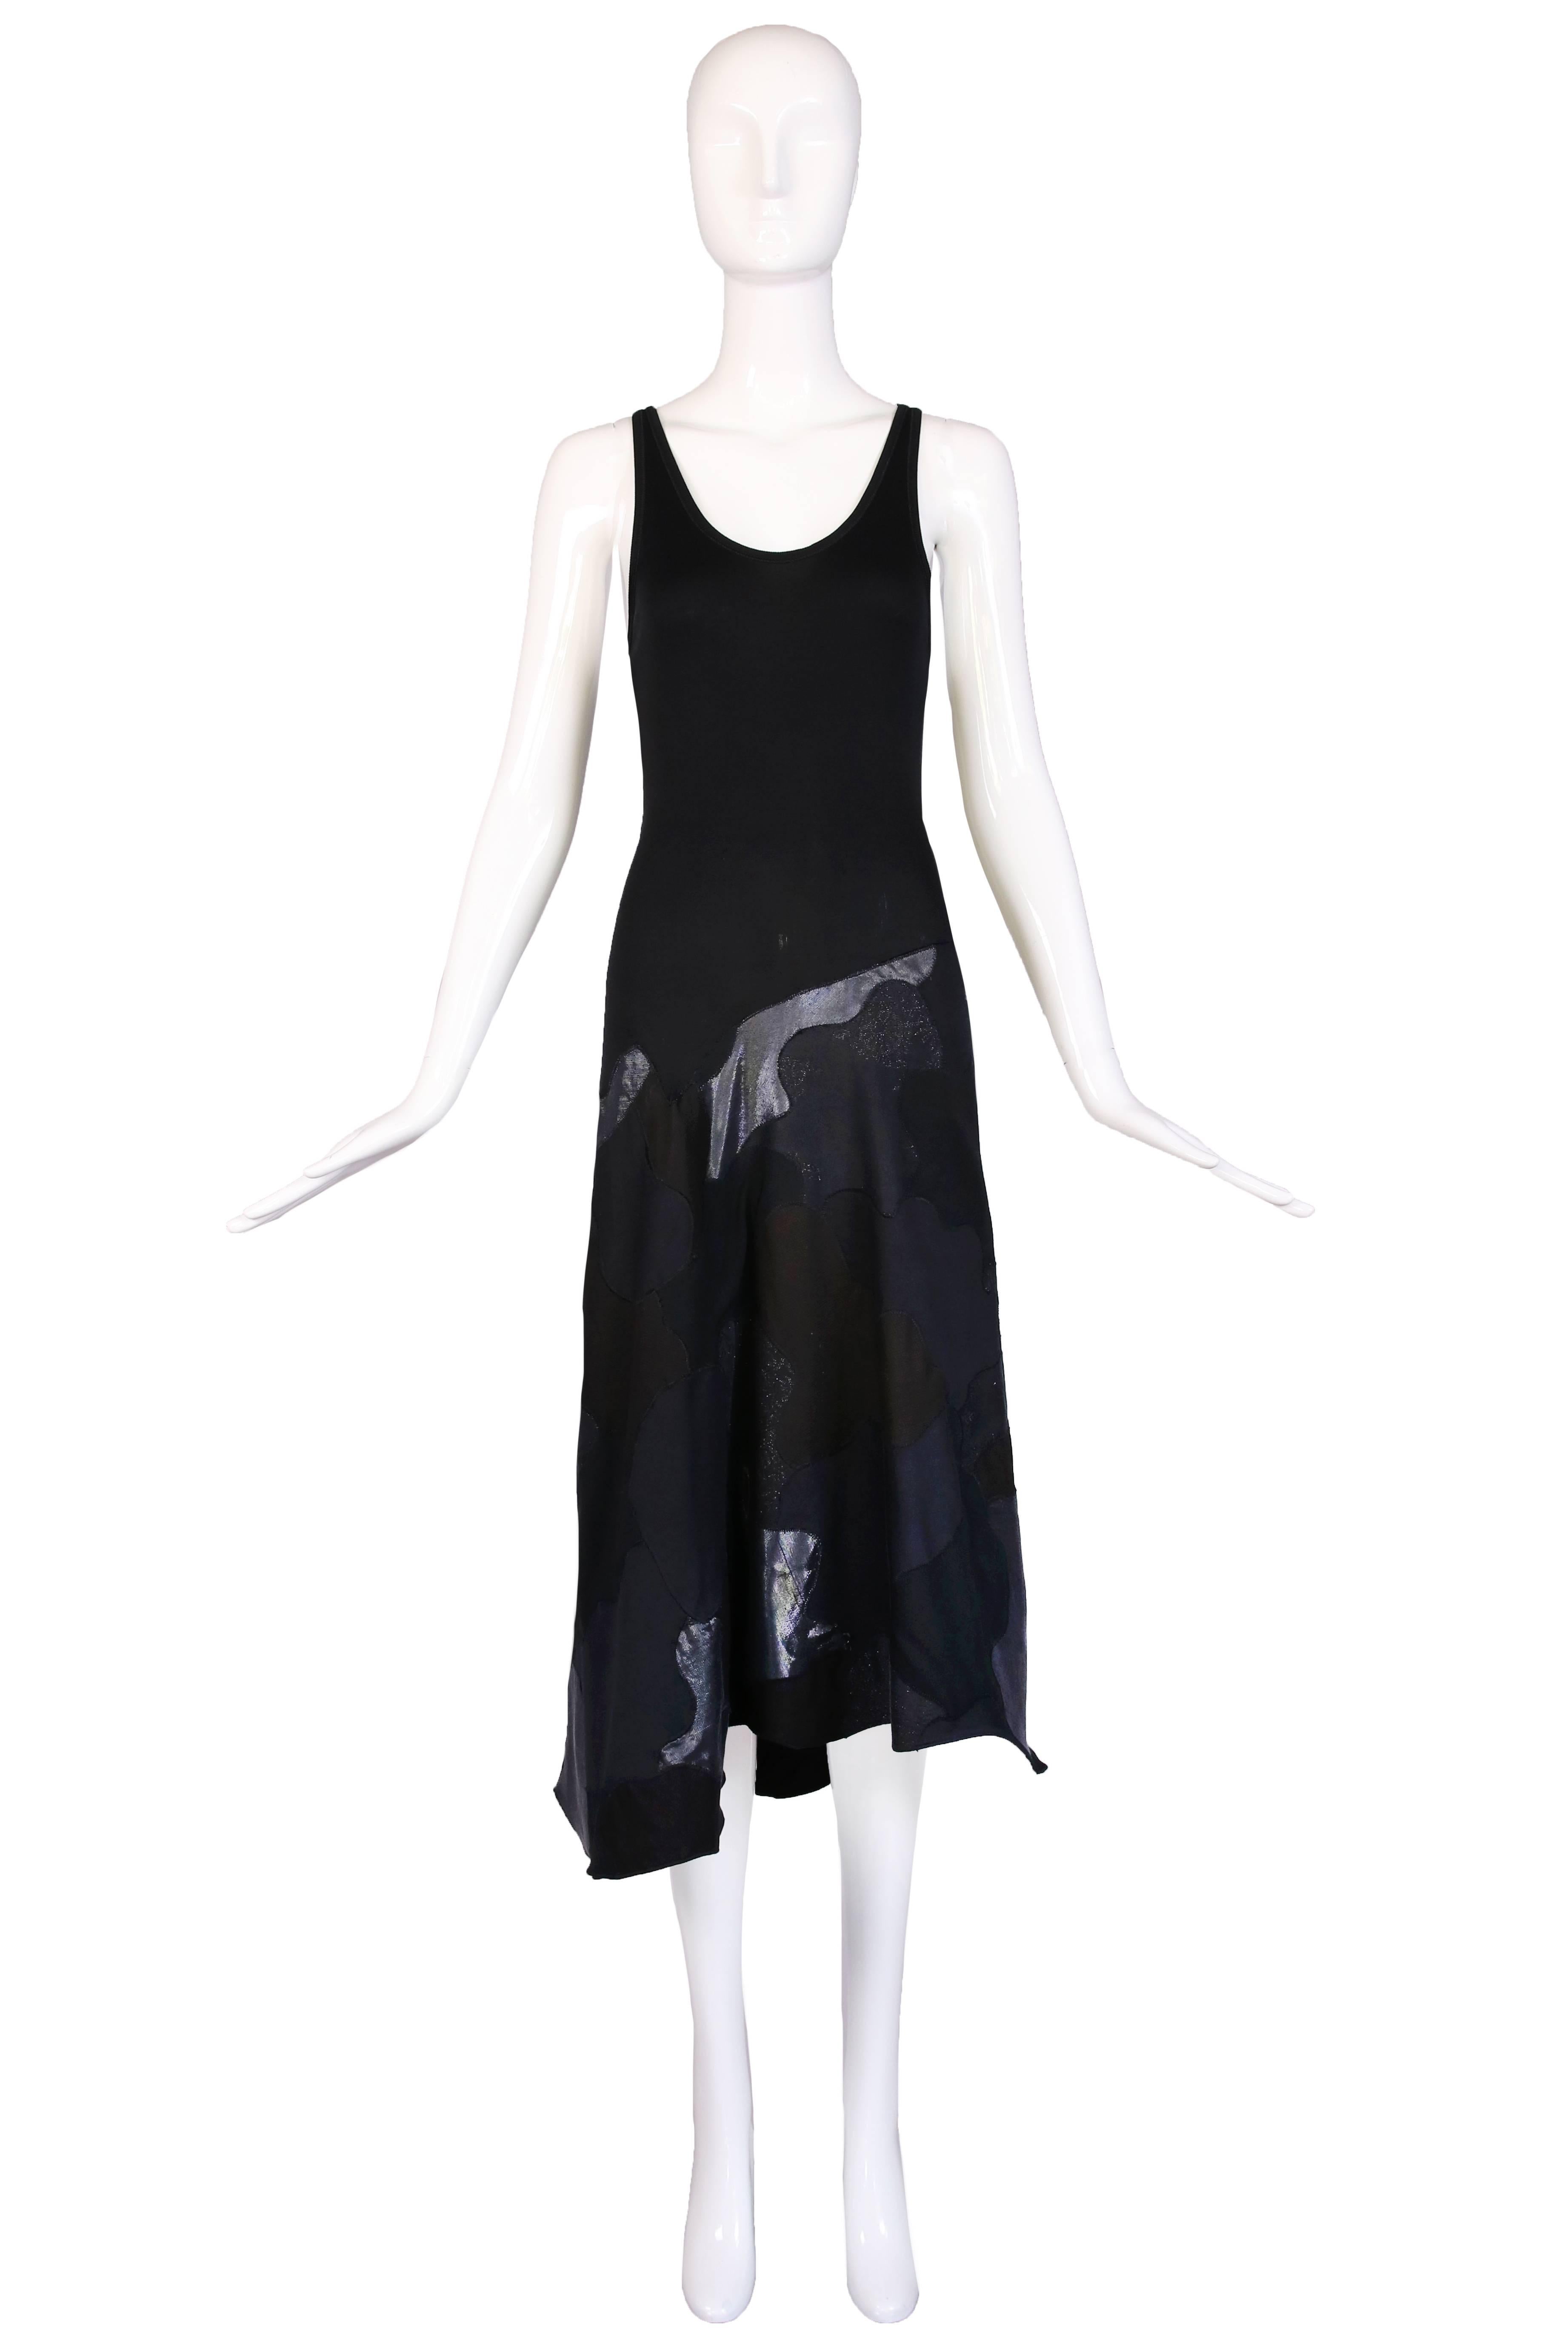 Circa 2003 Alexander McQueen robe débardeur en coton stretch noir avec jupe appliquée dans ce qui ressemble à un imprimé camouflage. En excellent état - il manque l'étiquette du tissu. Taille 40.